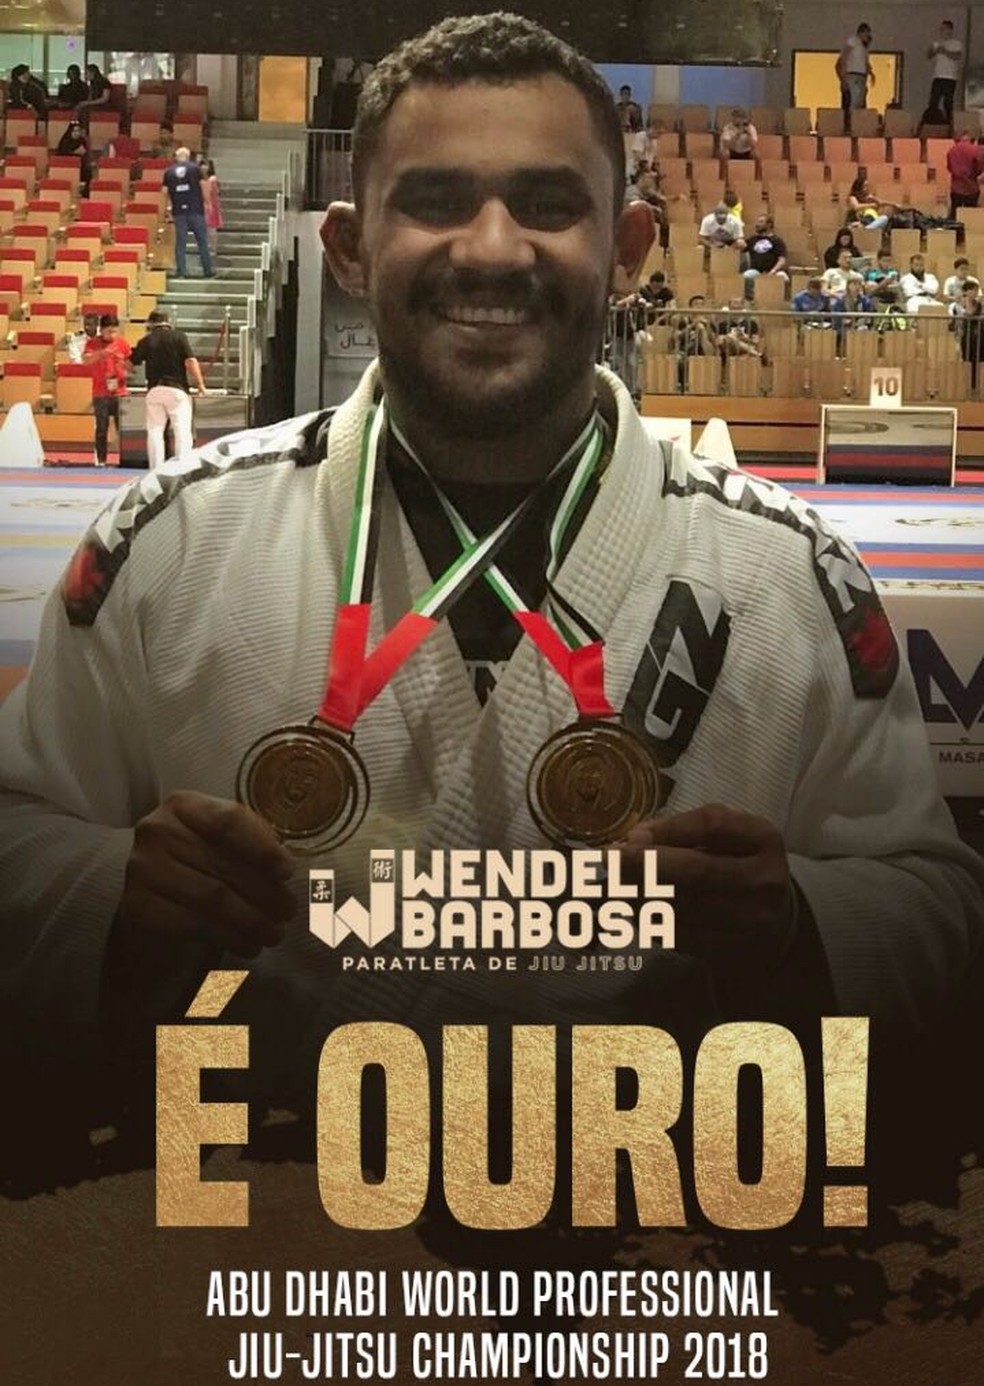 Wendell Barbosa. campeão mundial de parajiu-jitsu (Foto: Divulgação)